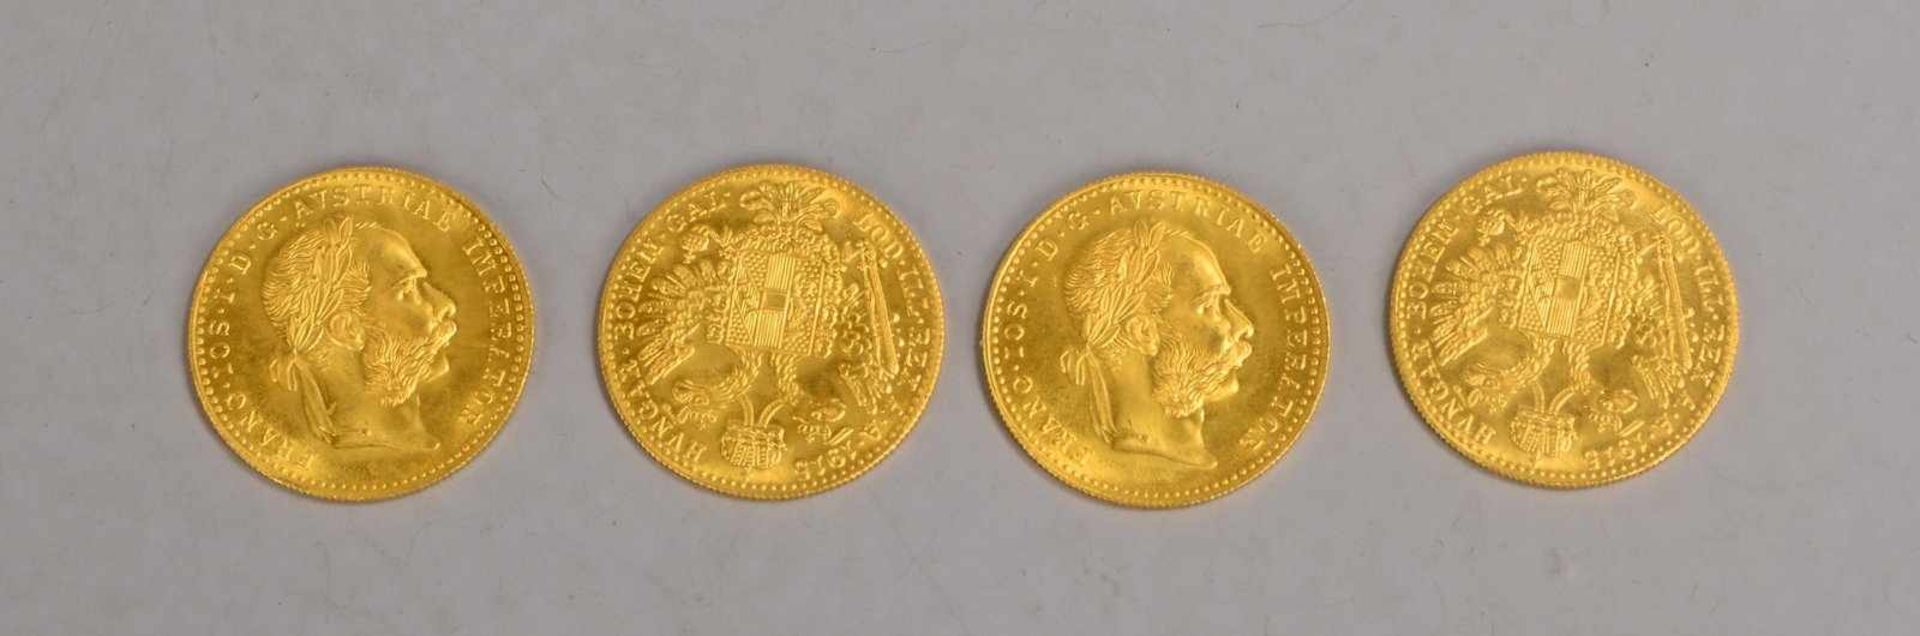 Satz Golddukaten, 986/1.000 Gold, 'Franz Josef I, Österreich-Ungarn', 'AA 1915', 4 Stück; Gewicht